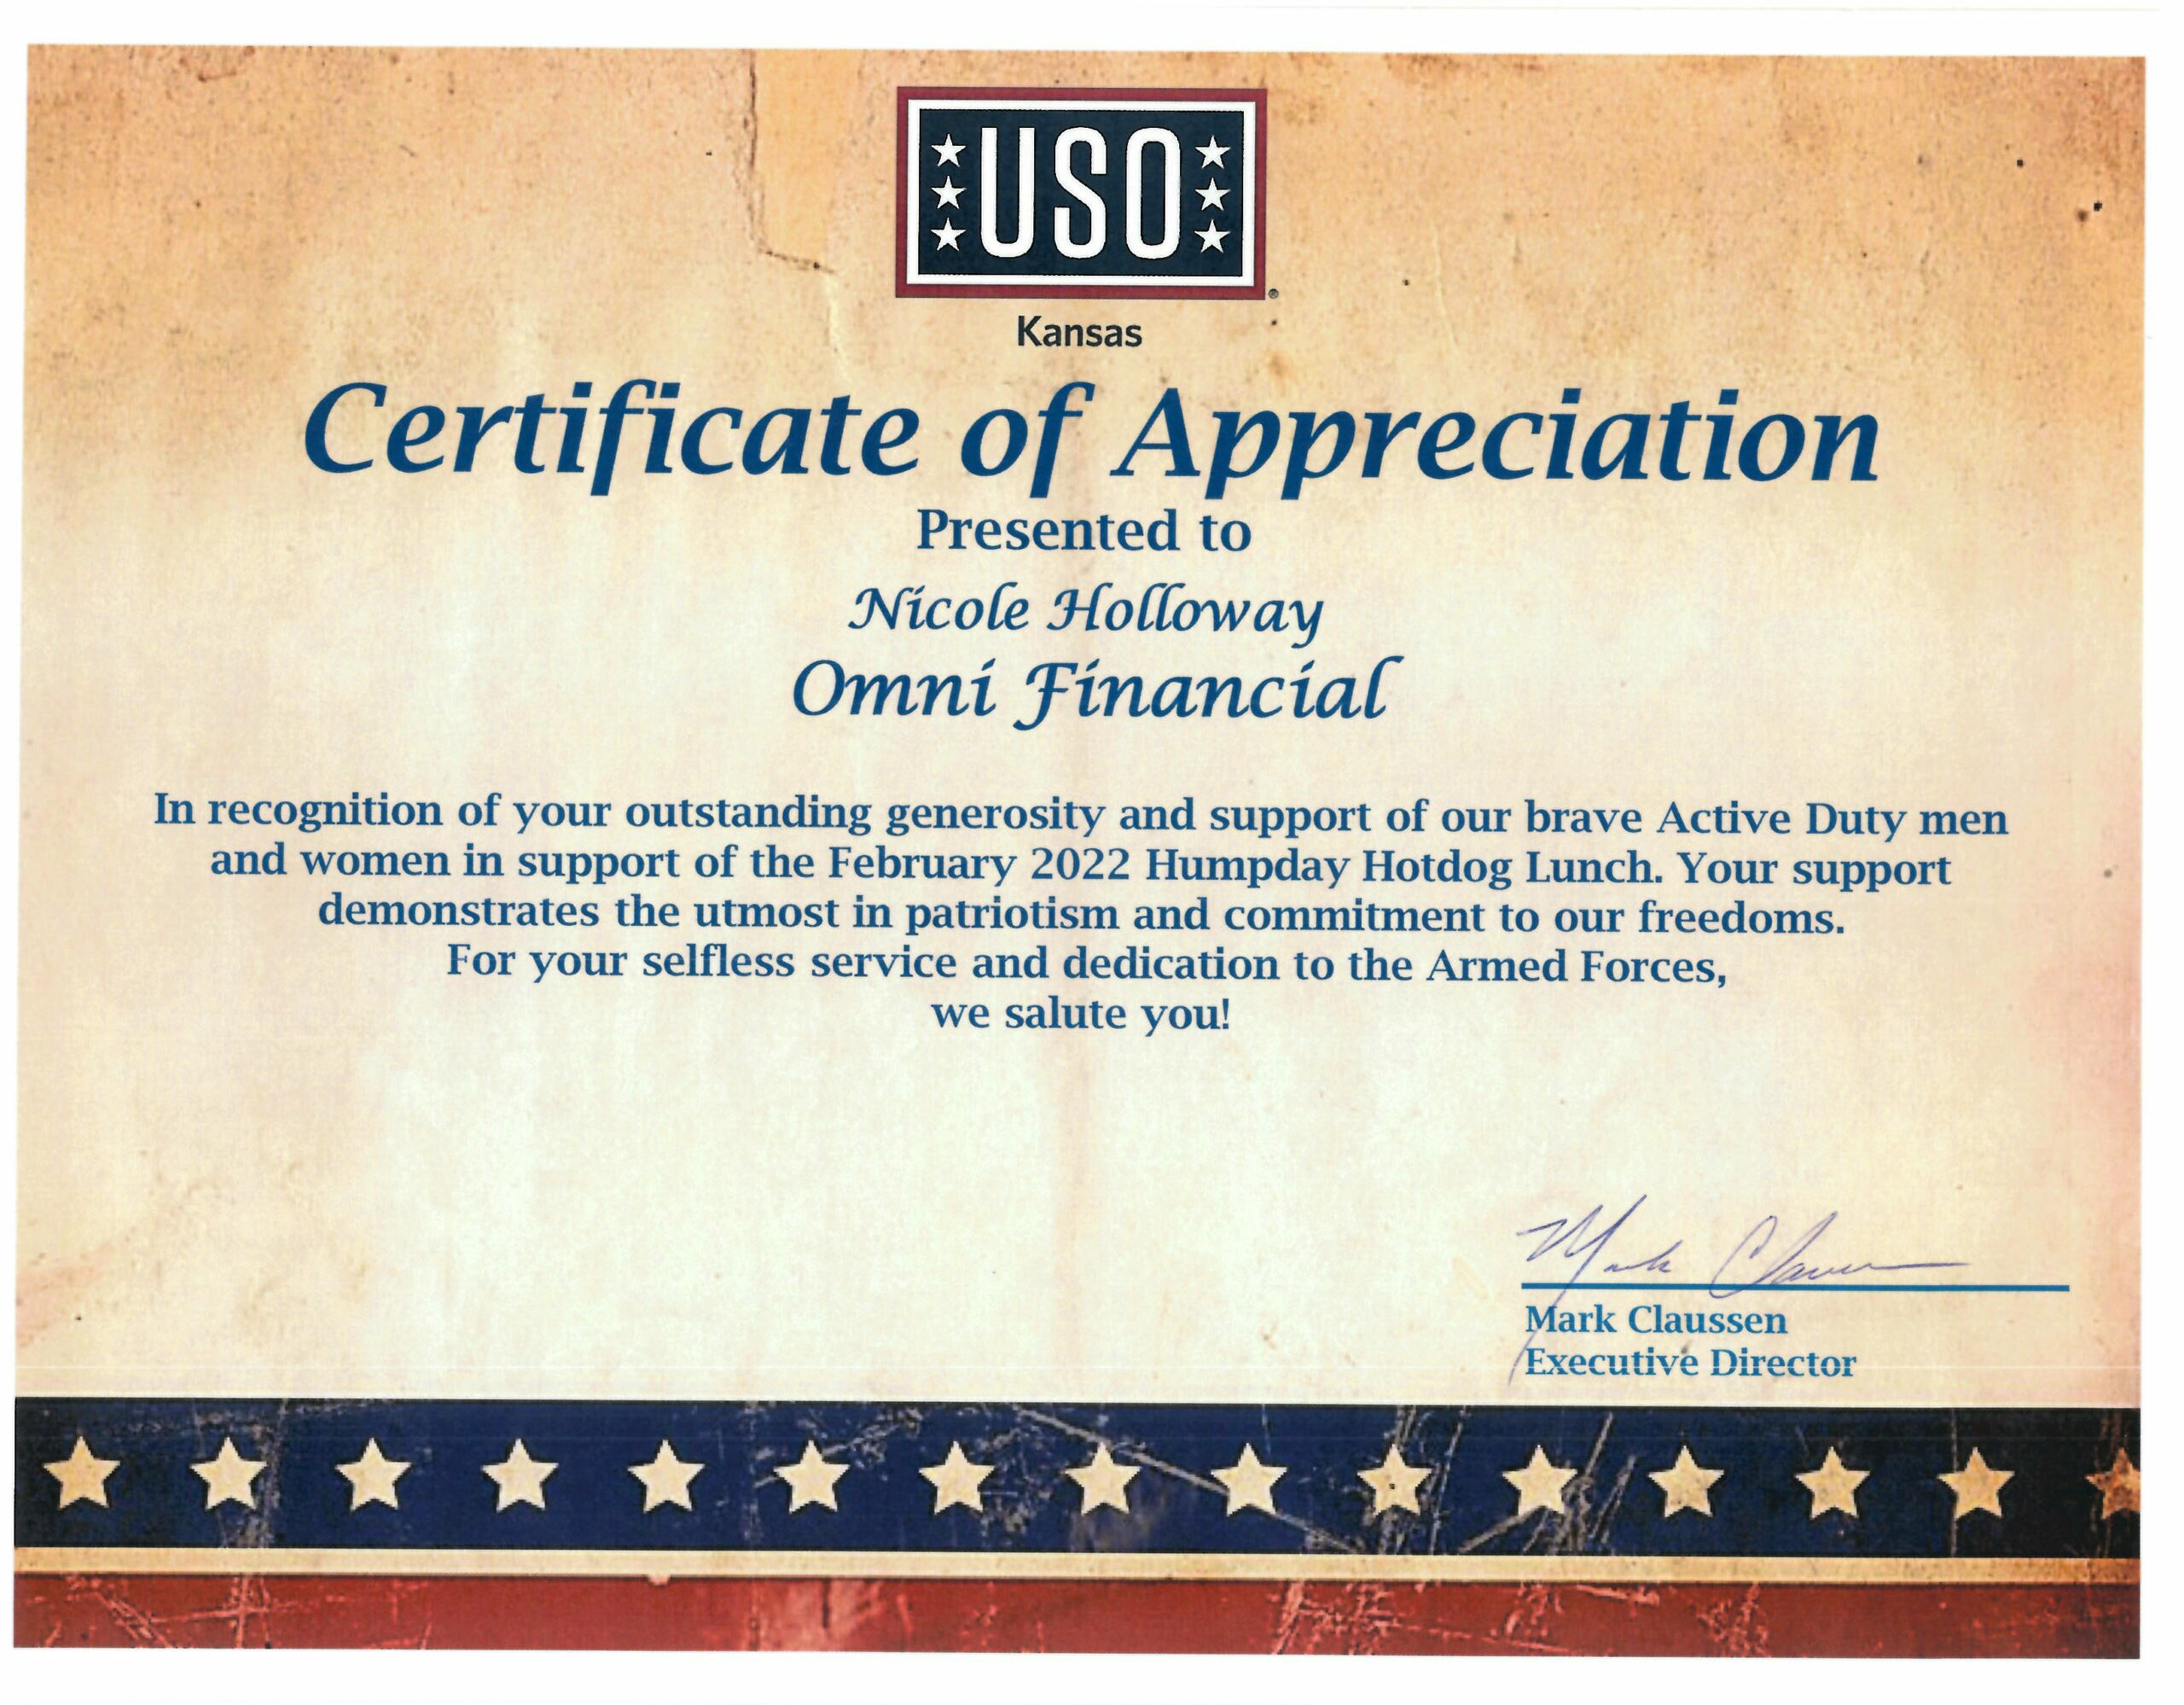 Humpday Hotdog Certificate of Appreciation